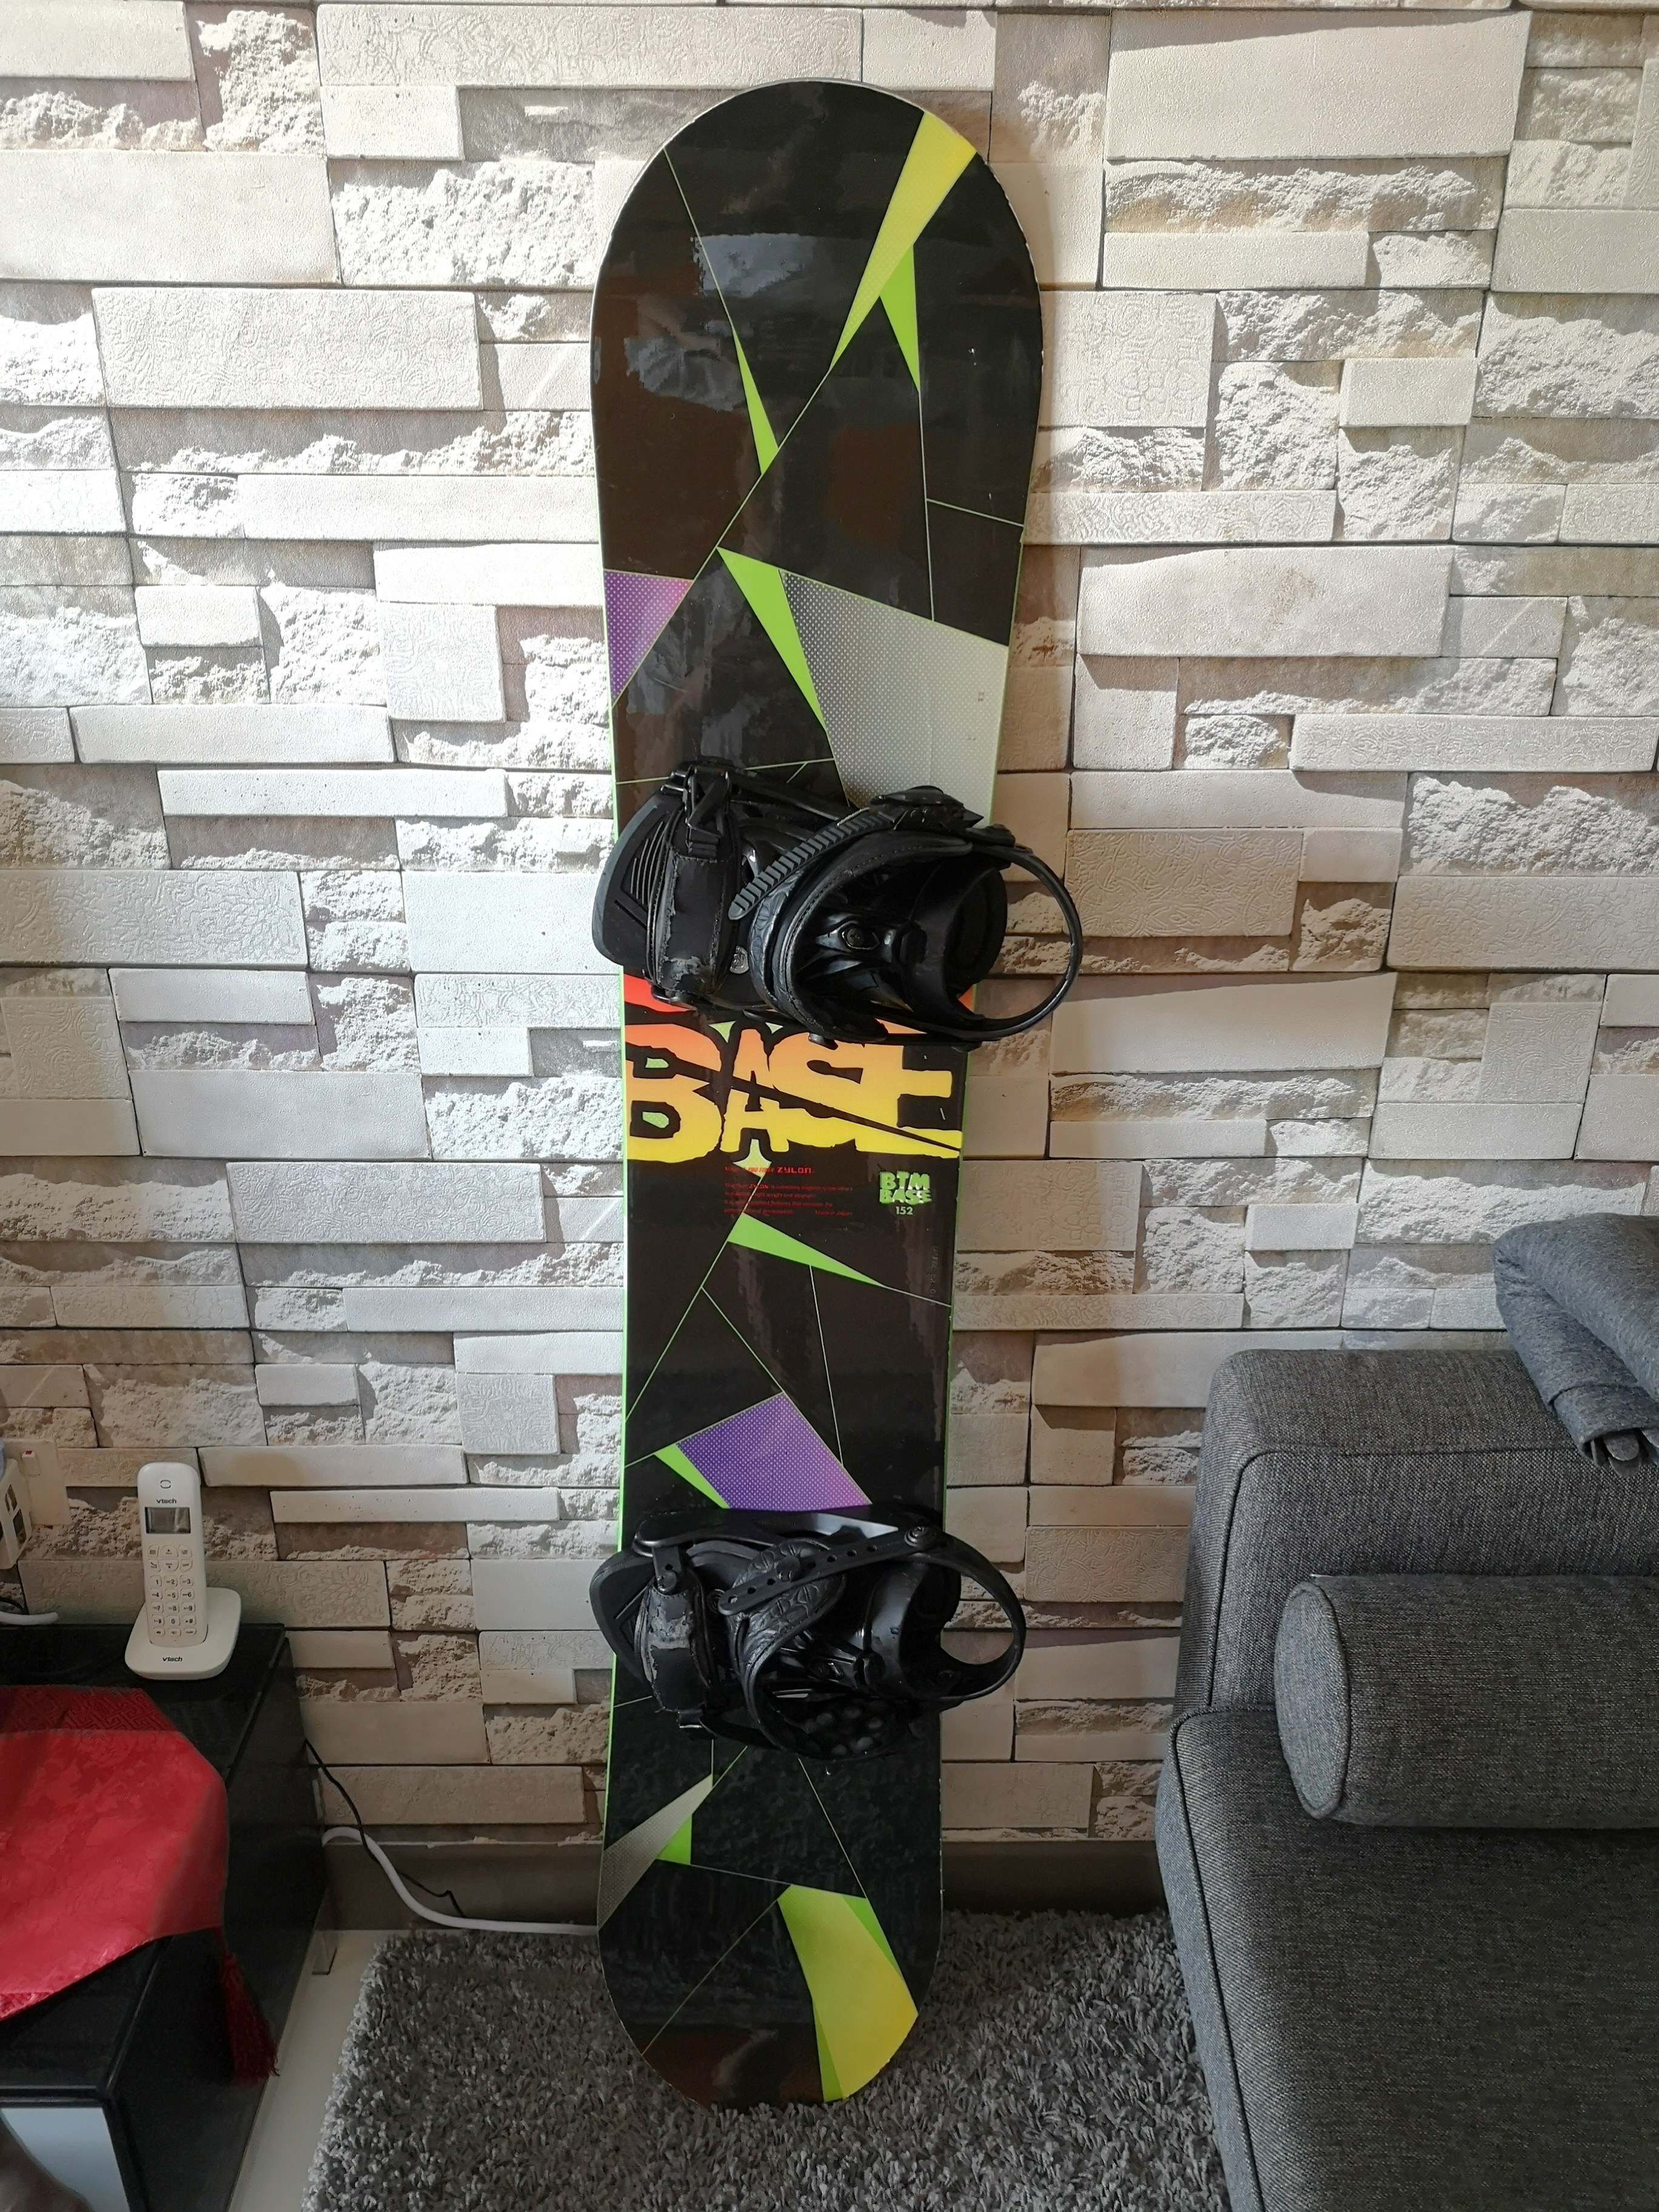 btm snowboard 152cm - ボード